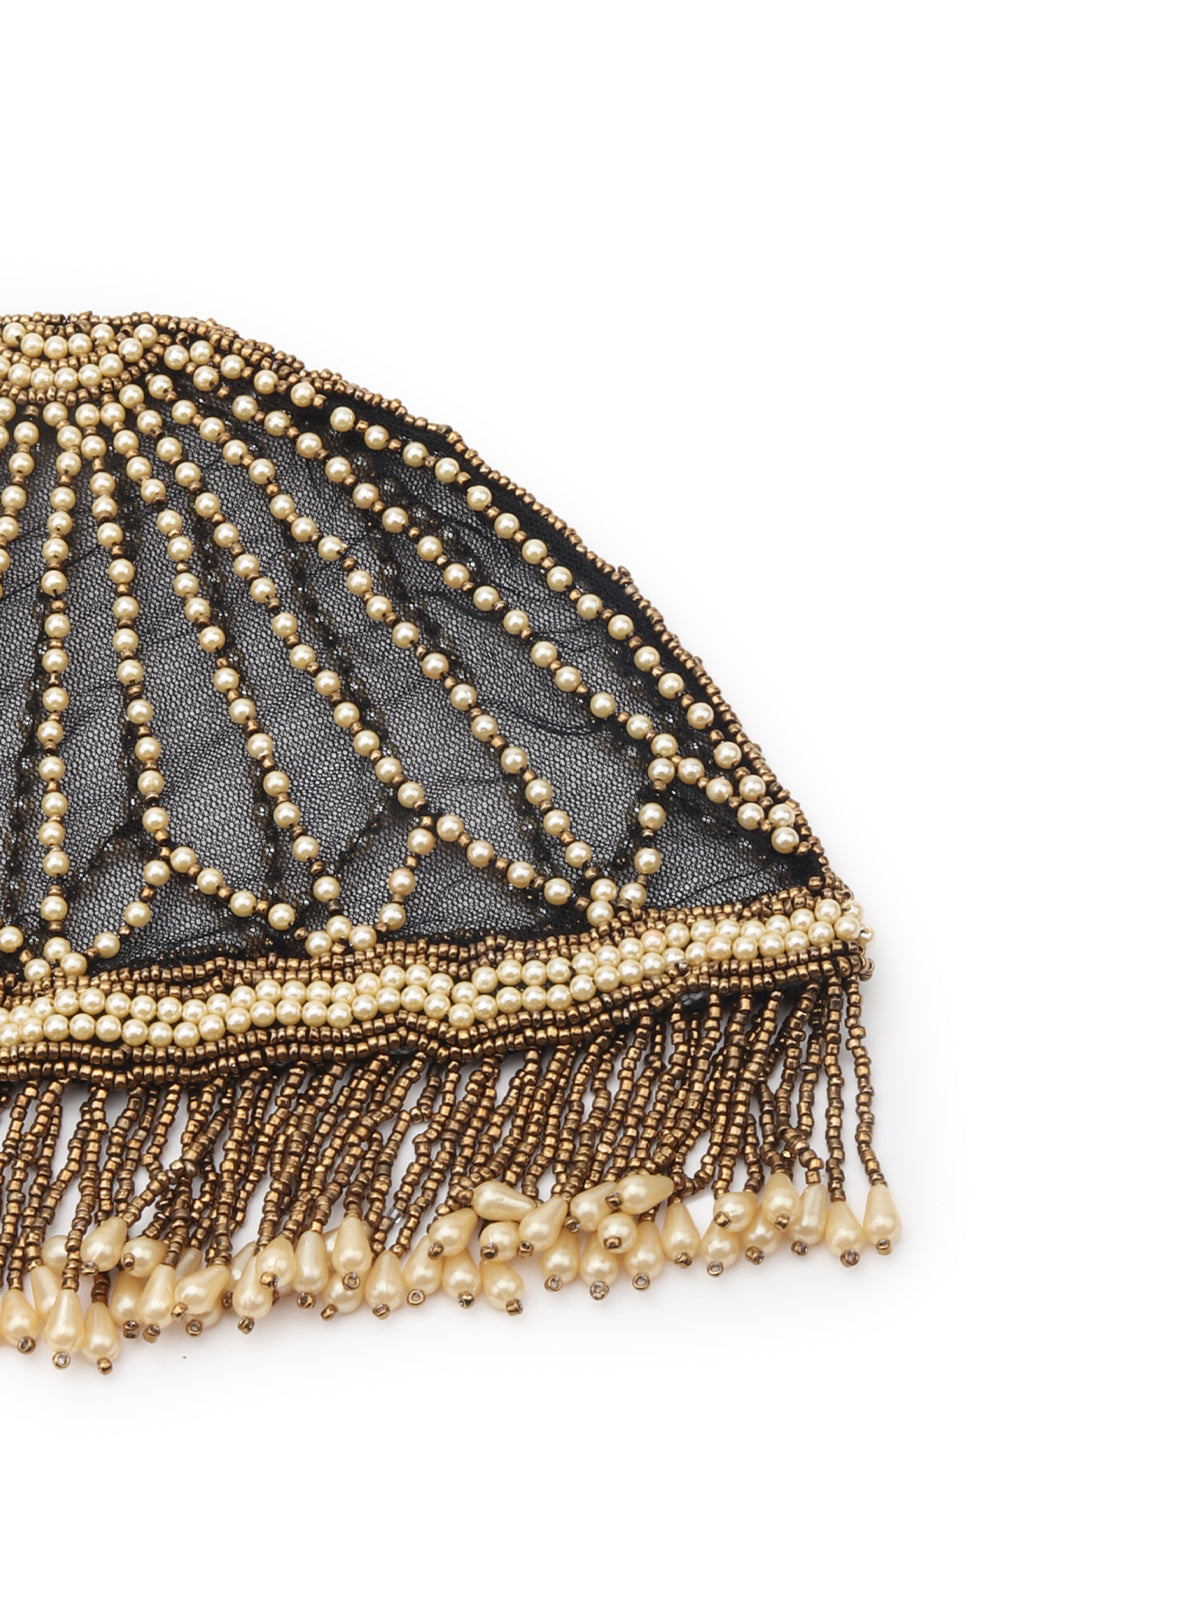 Odette White And Gold Tasseled Tribal Hair Cap For Women